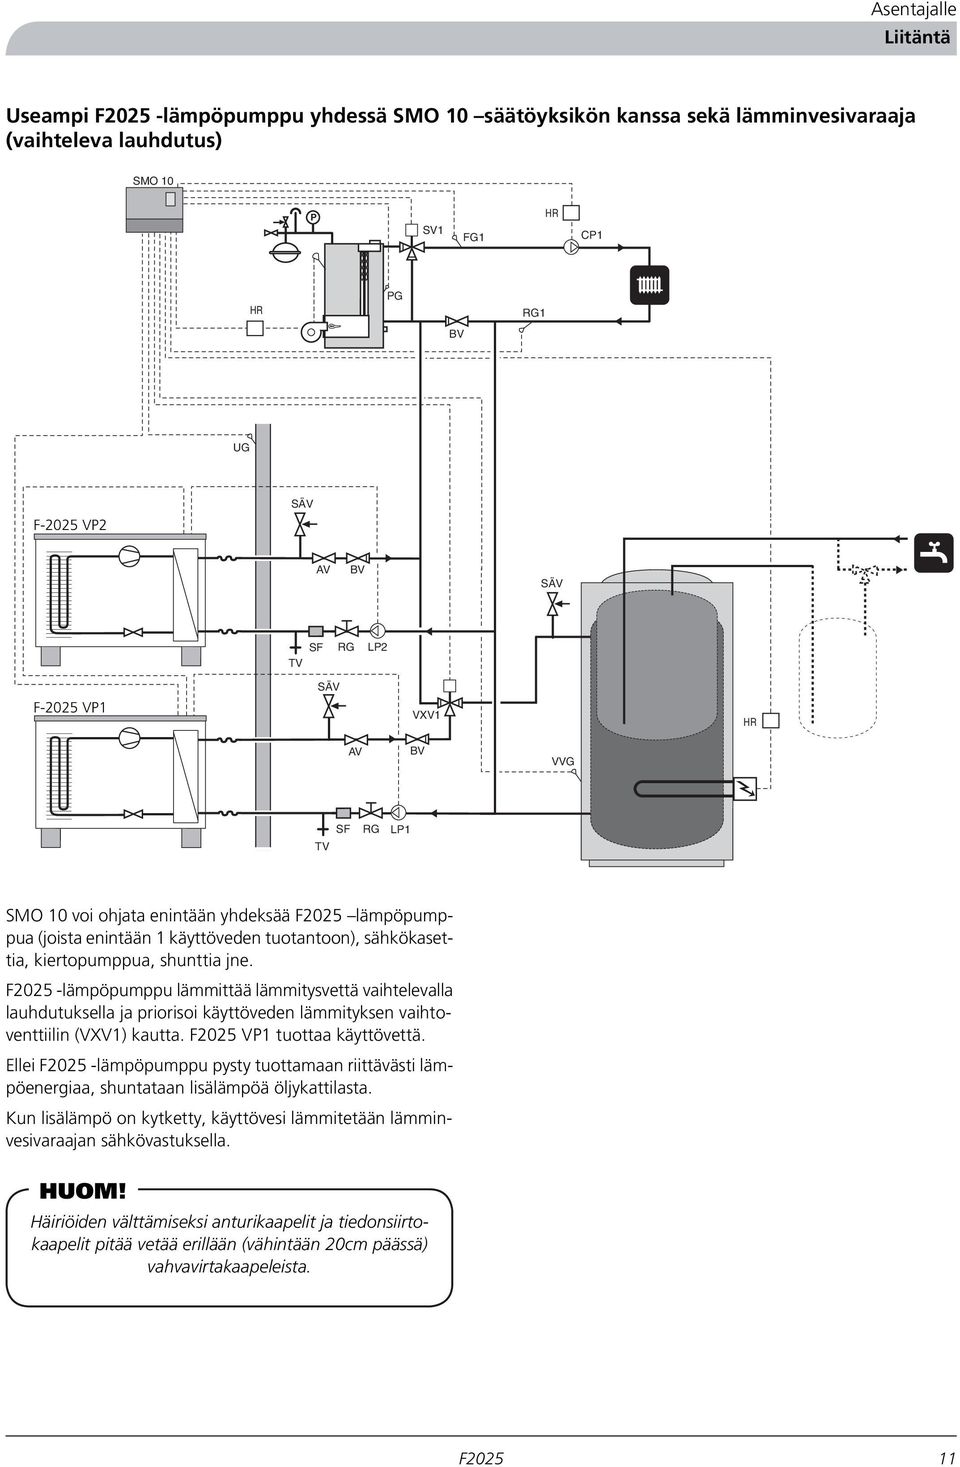 kiertopumppua, shunttia jne. -lämpöpumppu lämmittää lämmitysvettä vaihtelevalla lauhdutuksella ja priorisoi käyttöveden lämmityksen vaihtoventtiilin (VXV1) kautta. VP1 tuottaa käyttövettä.